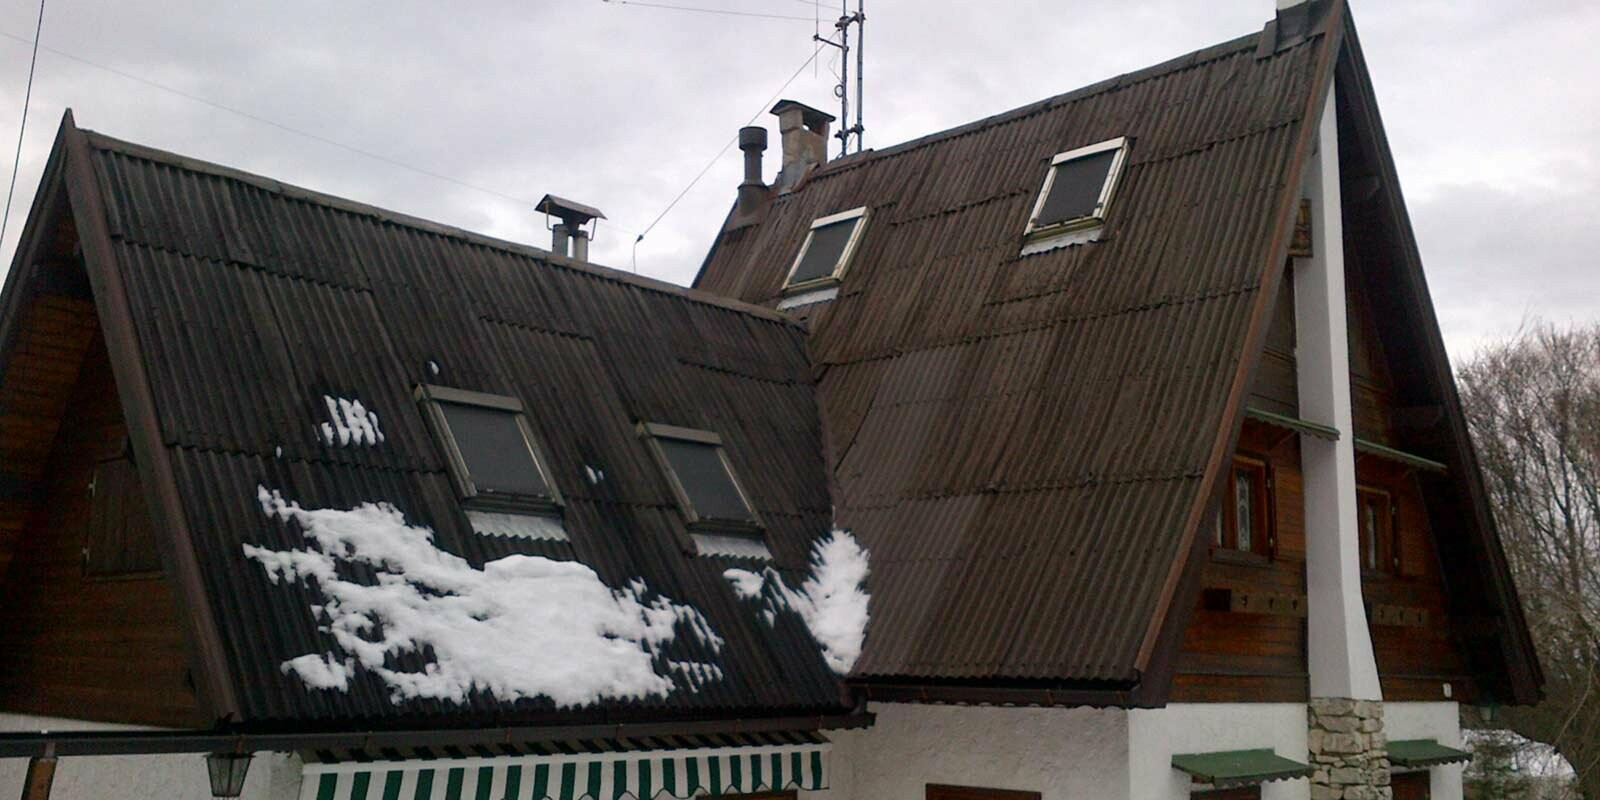 Surface de toit très inclinée avant la rénovation de toiture à l’aide de losanges de toiture PREFA, encadrement des fenêtres de toit inclus